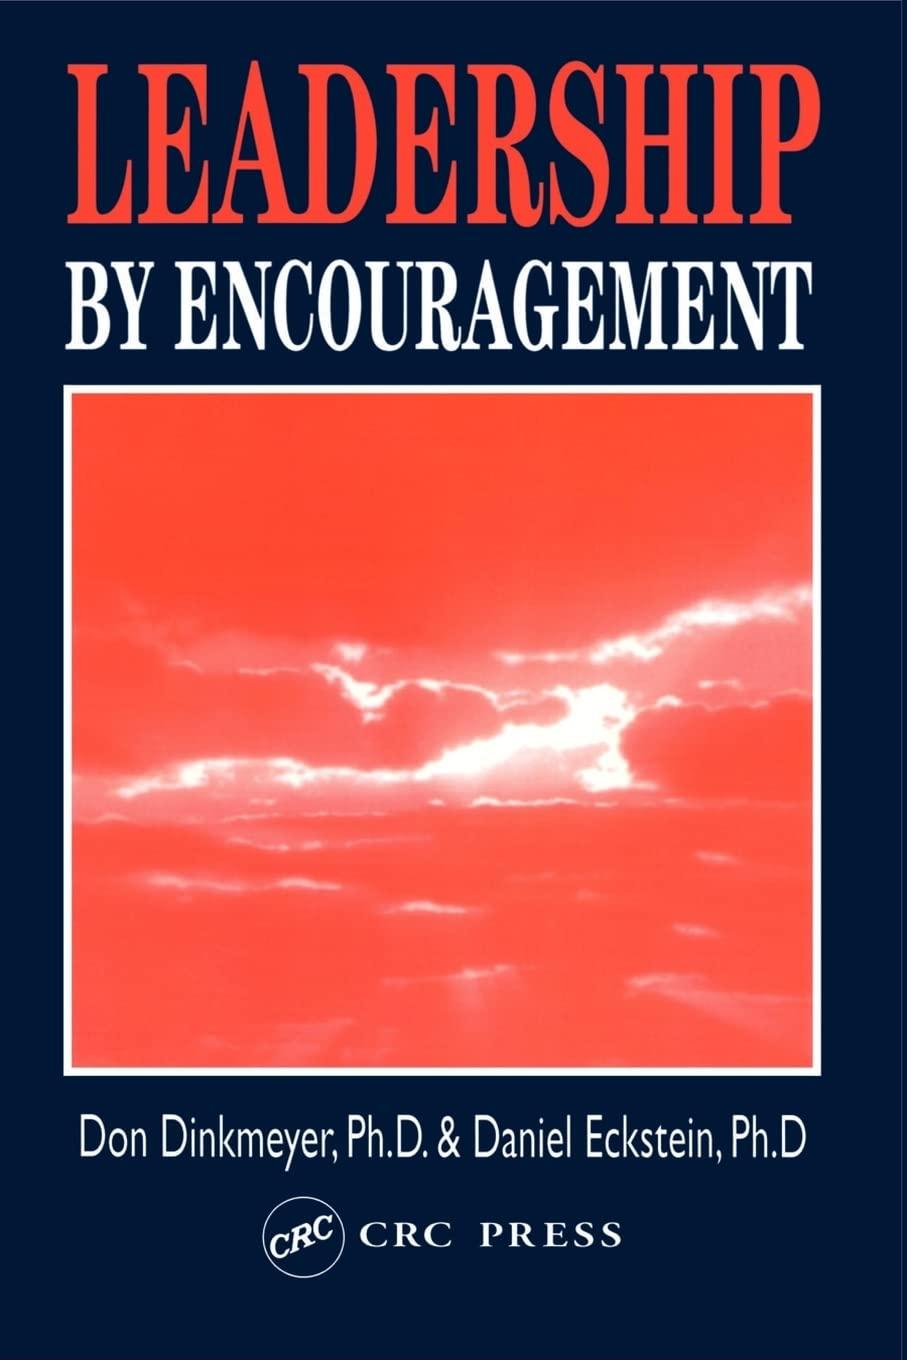 leadership by encouragement 1st edition don dinkmeyer, daniel eckstein 157444008x, 978-1574440089